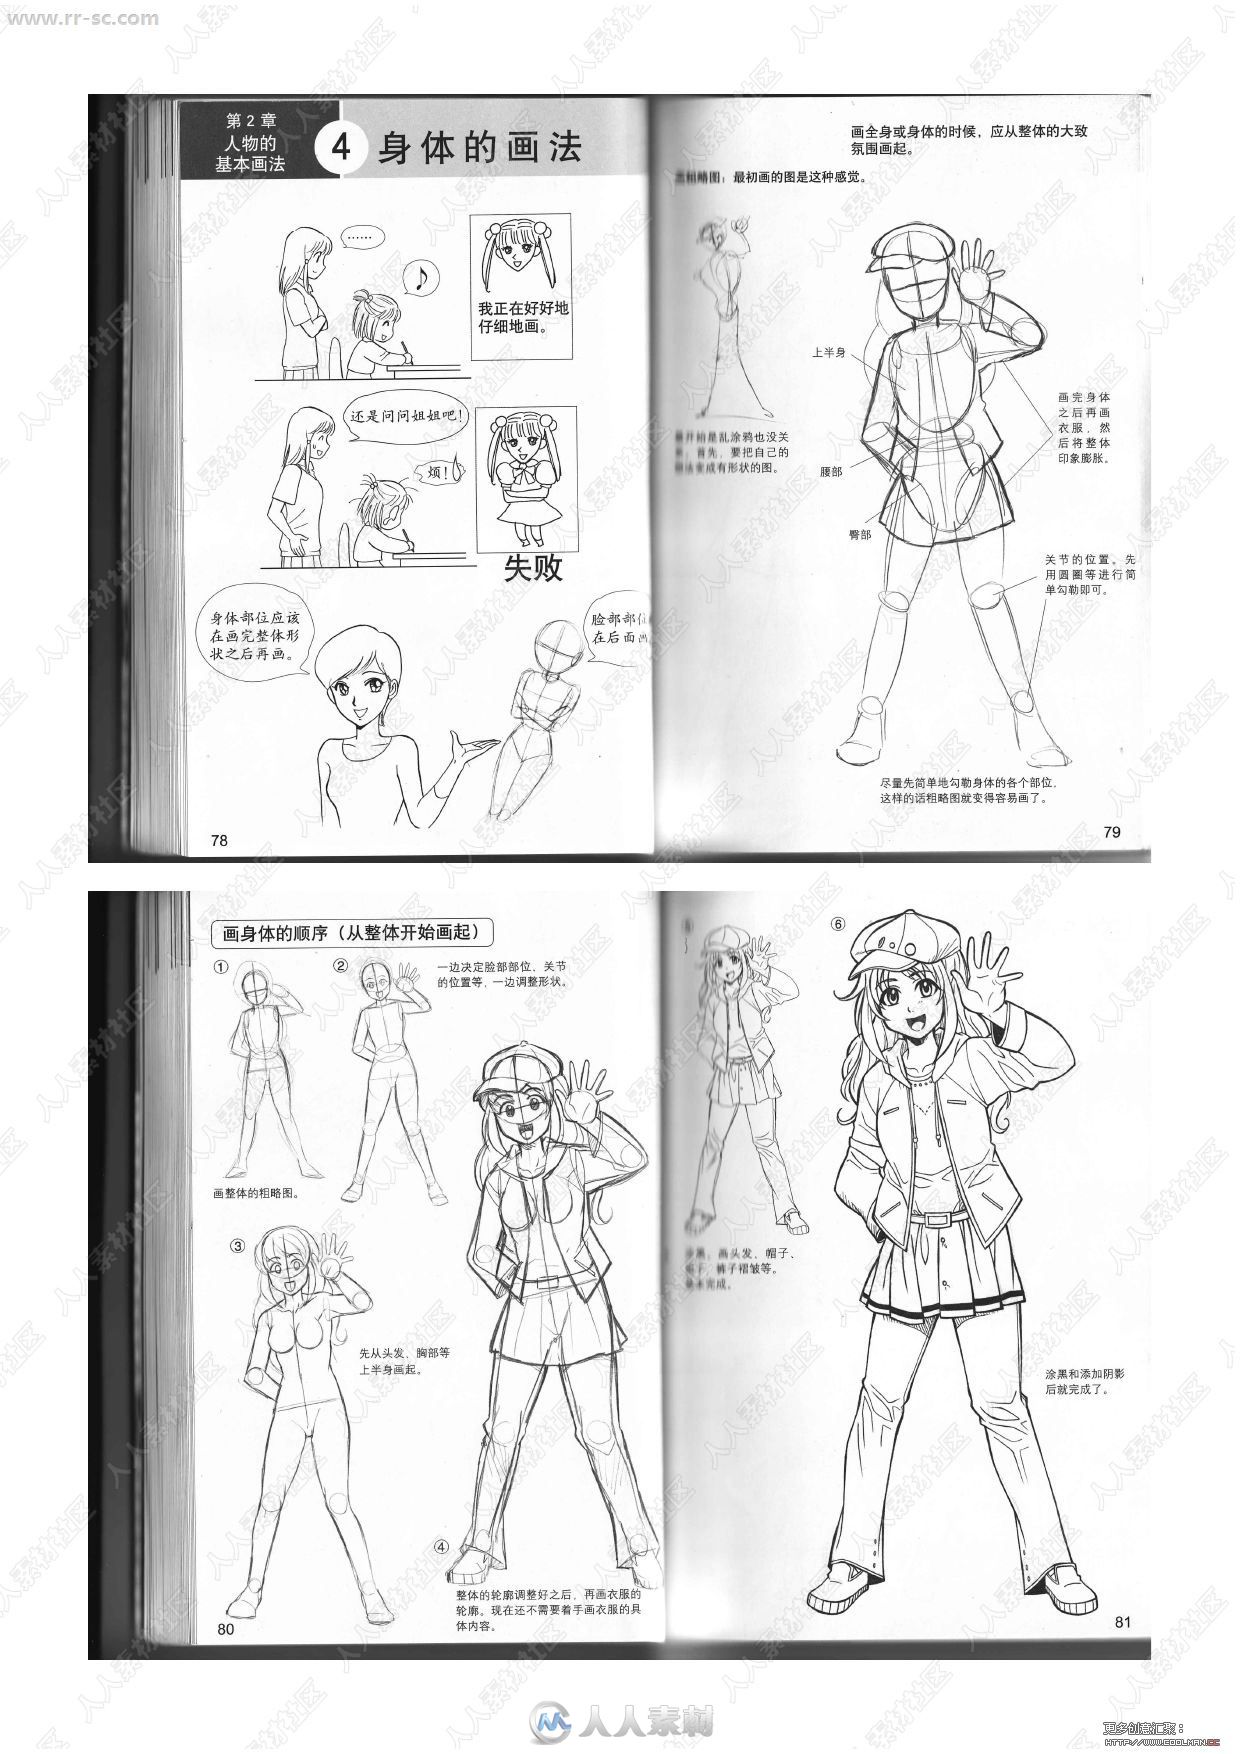 日本漫画技法终极向导人物画材基础篇书籍杂志